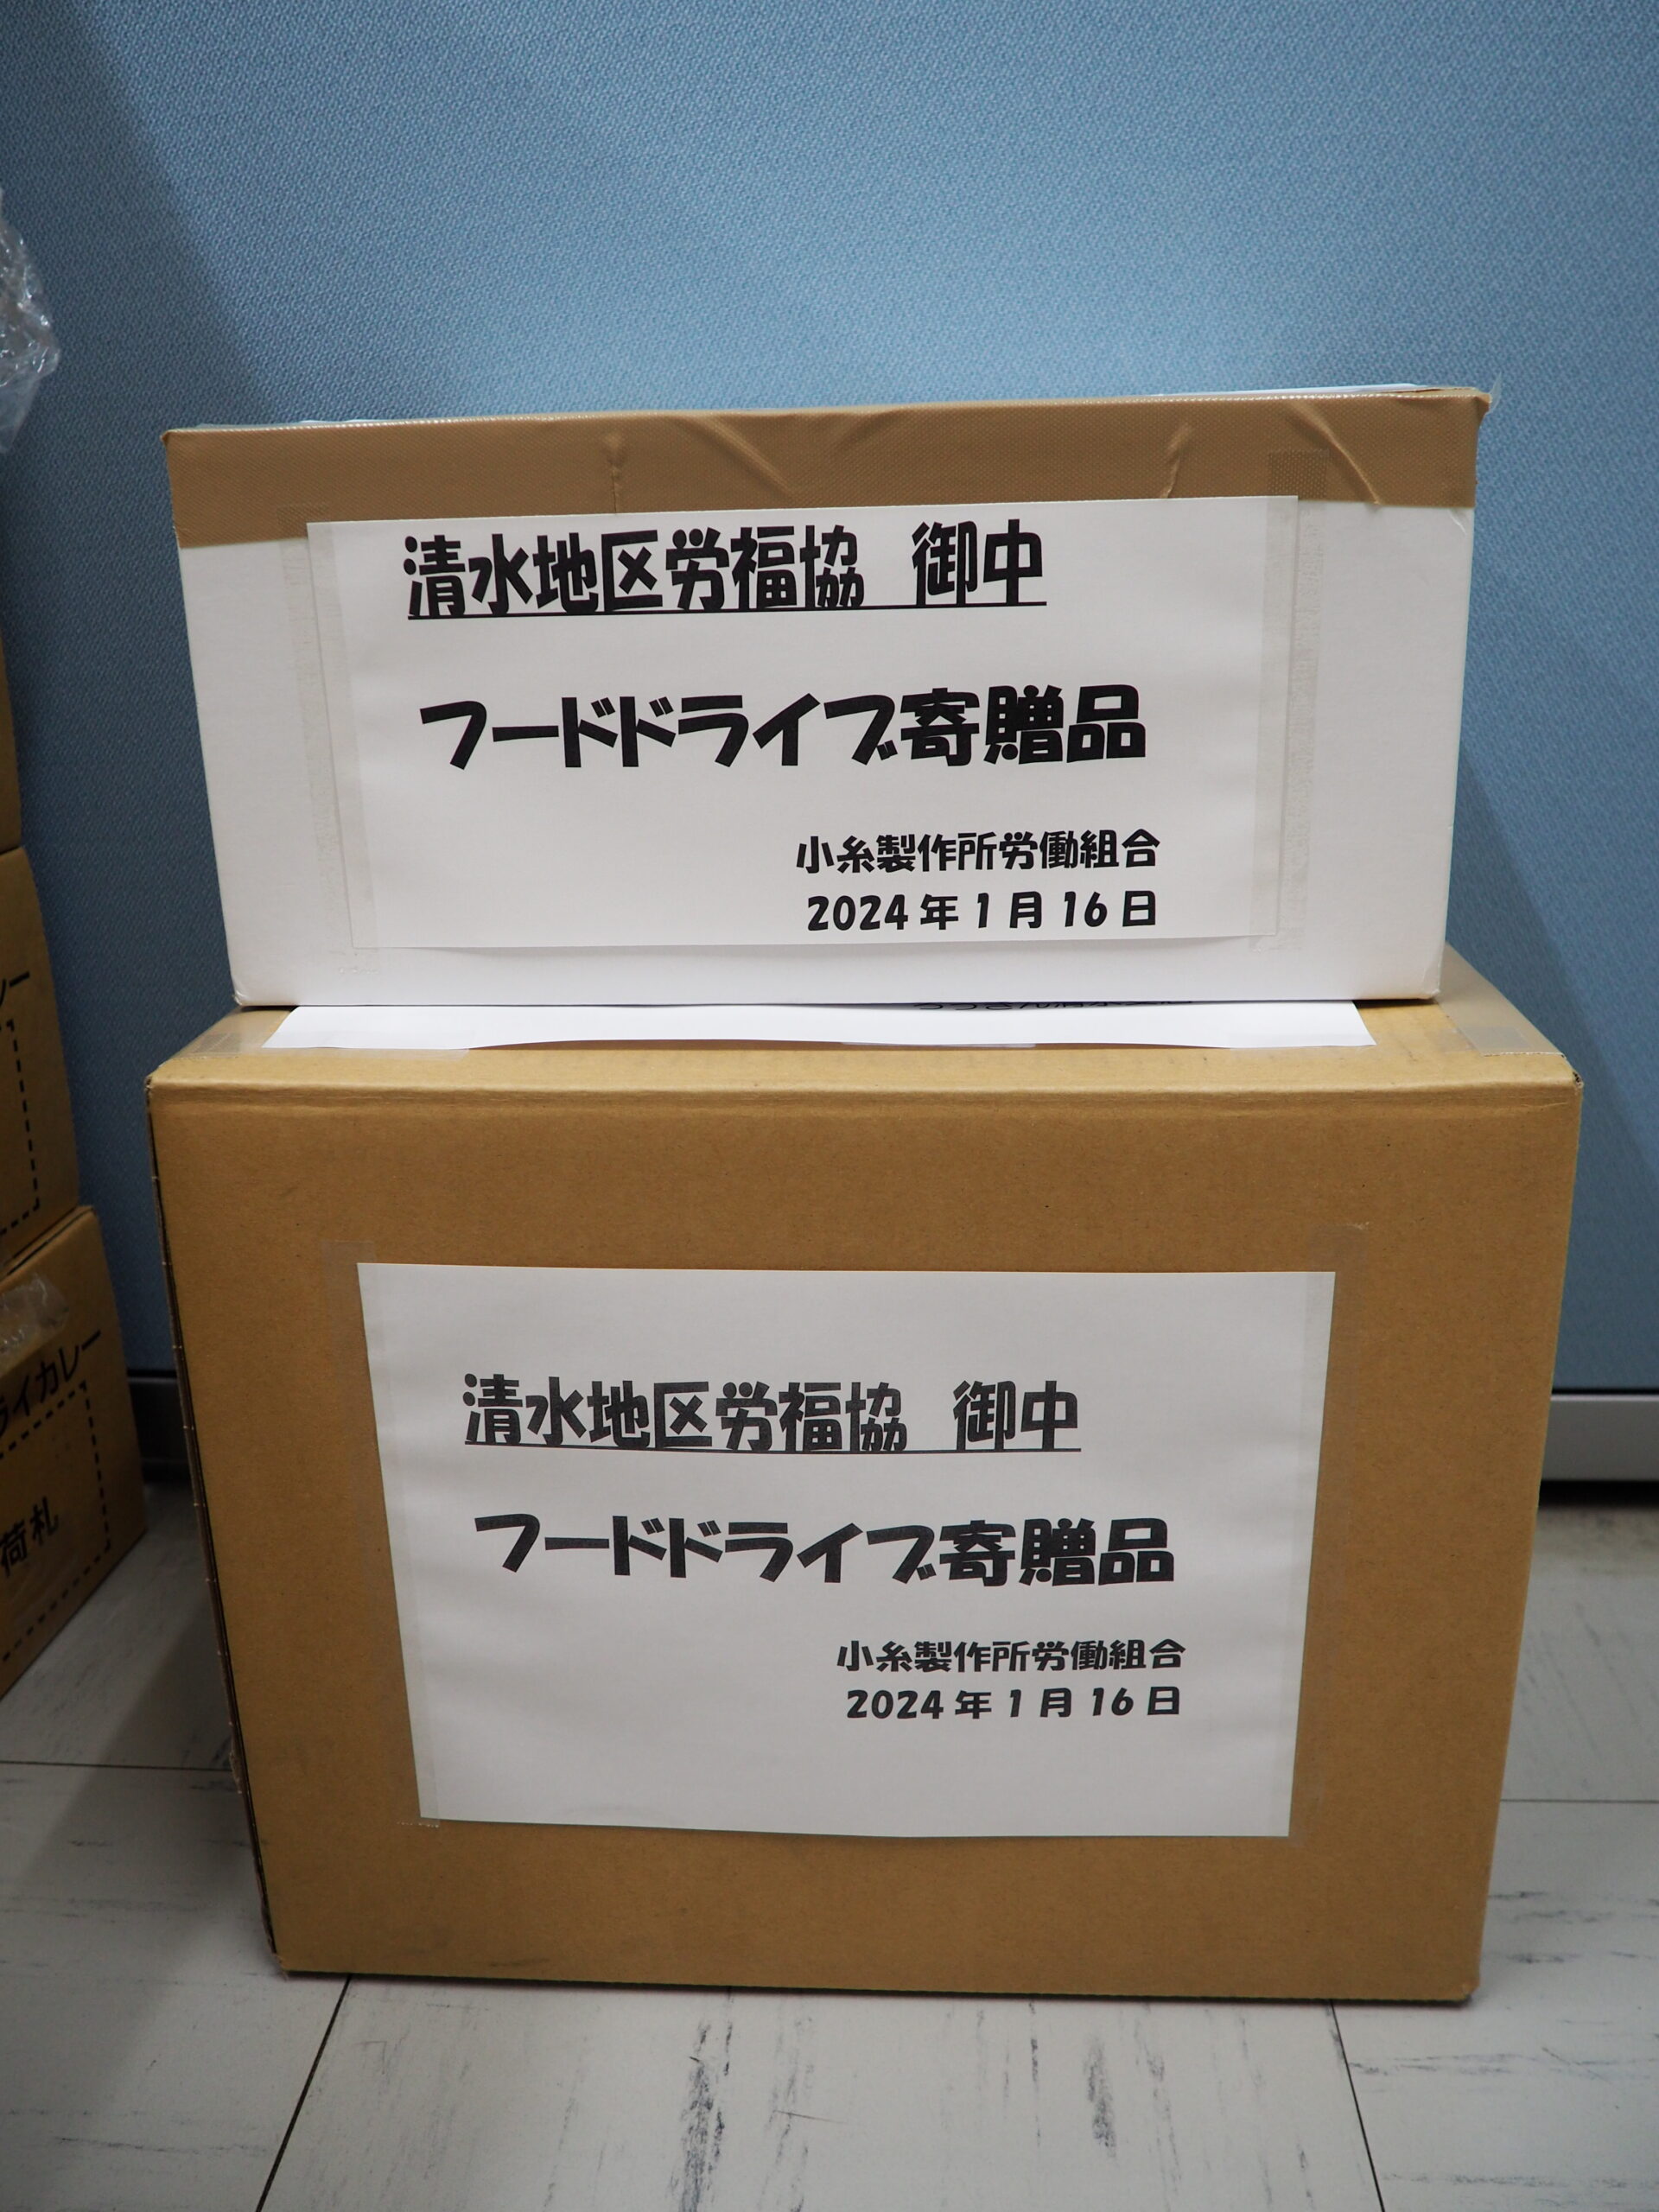 小糸製作所労働組合様・静岡地区労働者福祉協議会様から食品を提供いただきました。